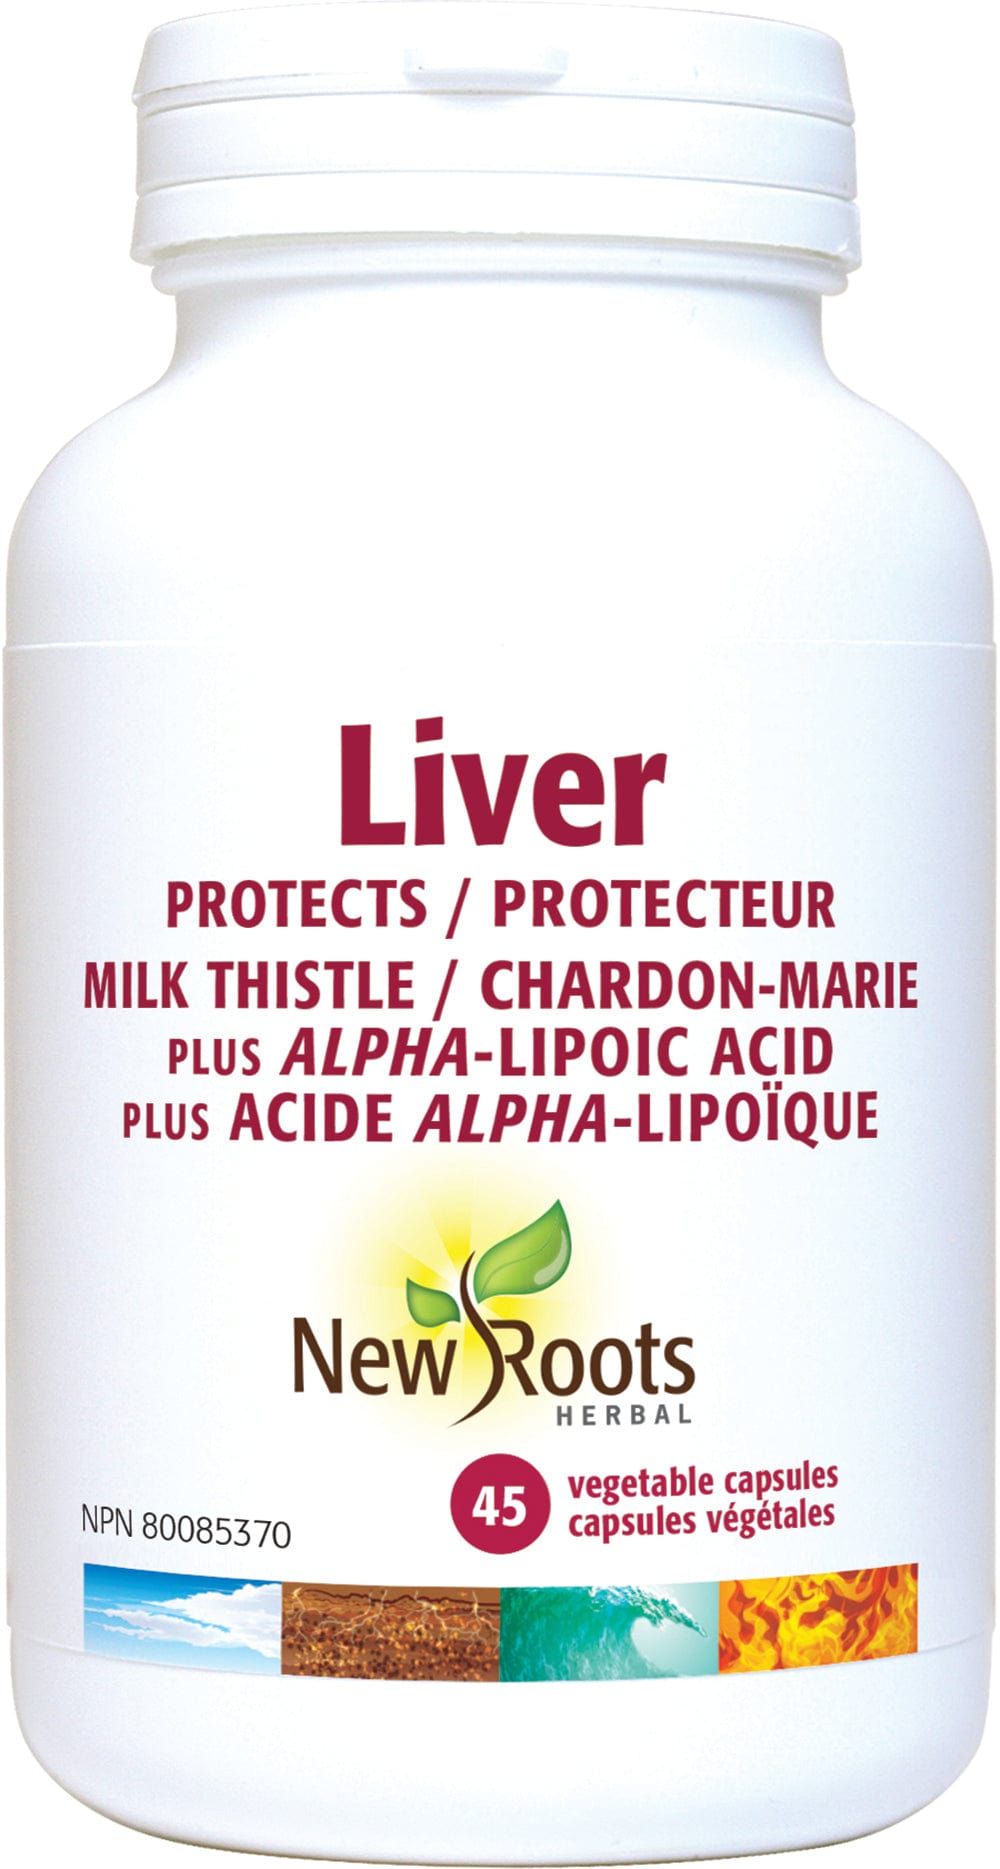 NEW ROOTS HERBAL Suppléments Liver (chardon-marie) / Protection du foie 45caps